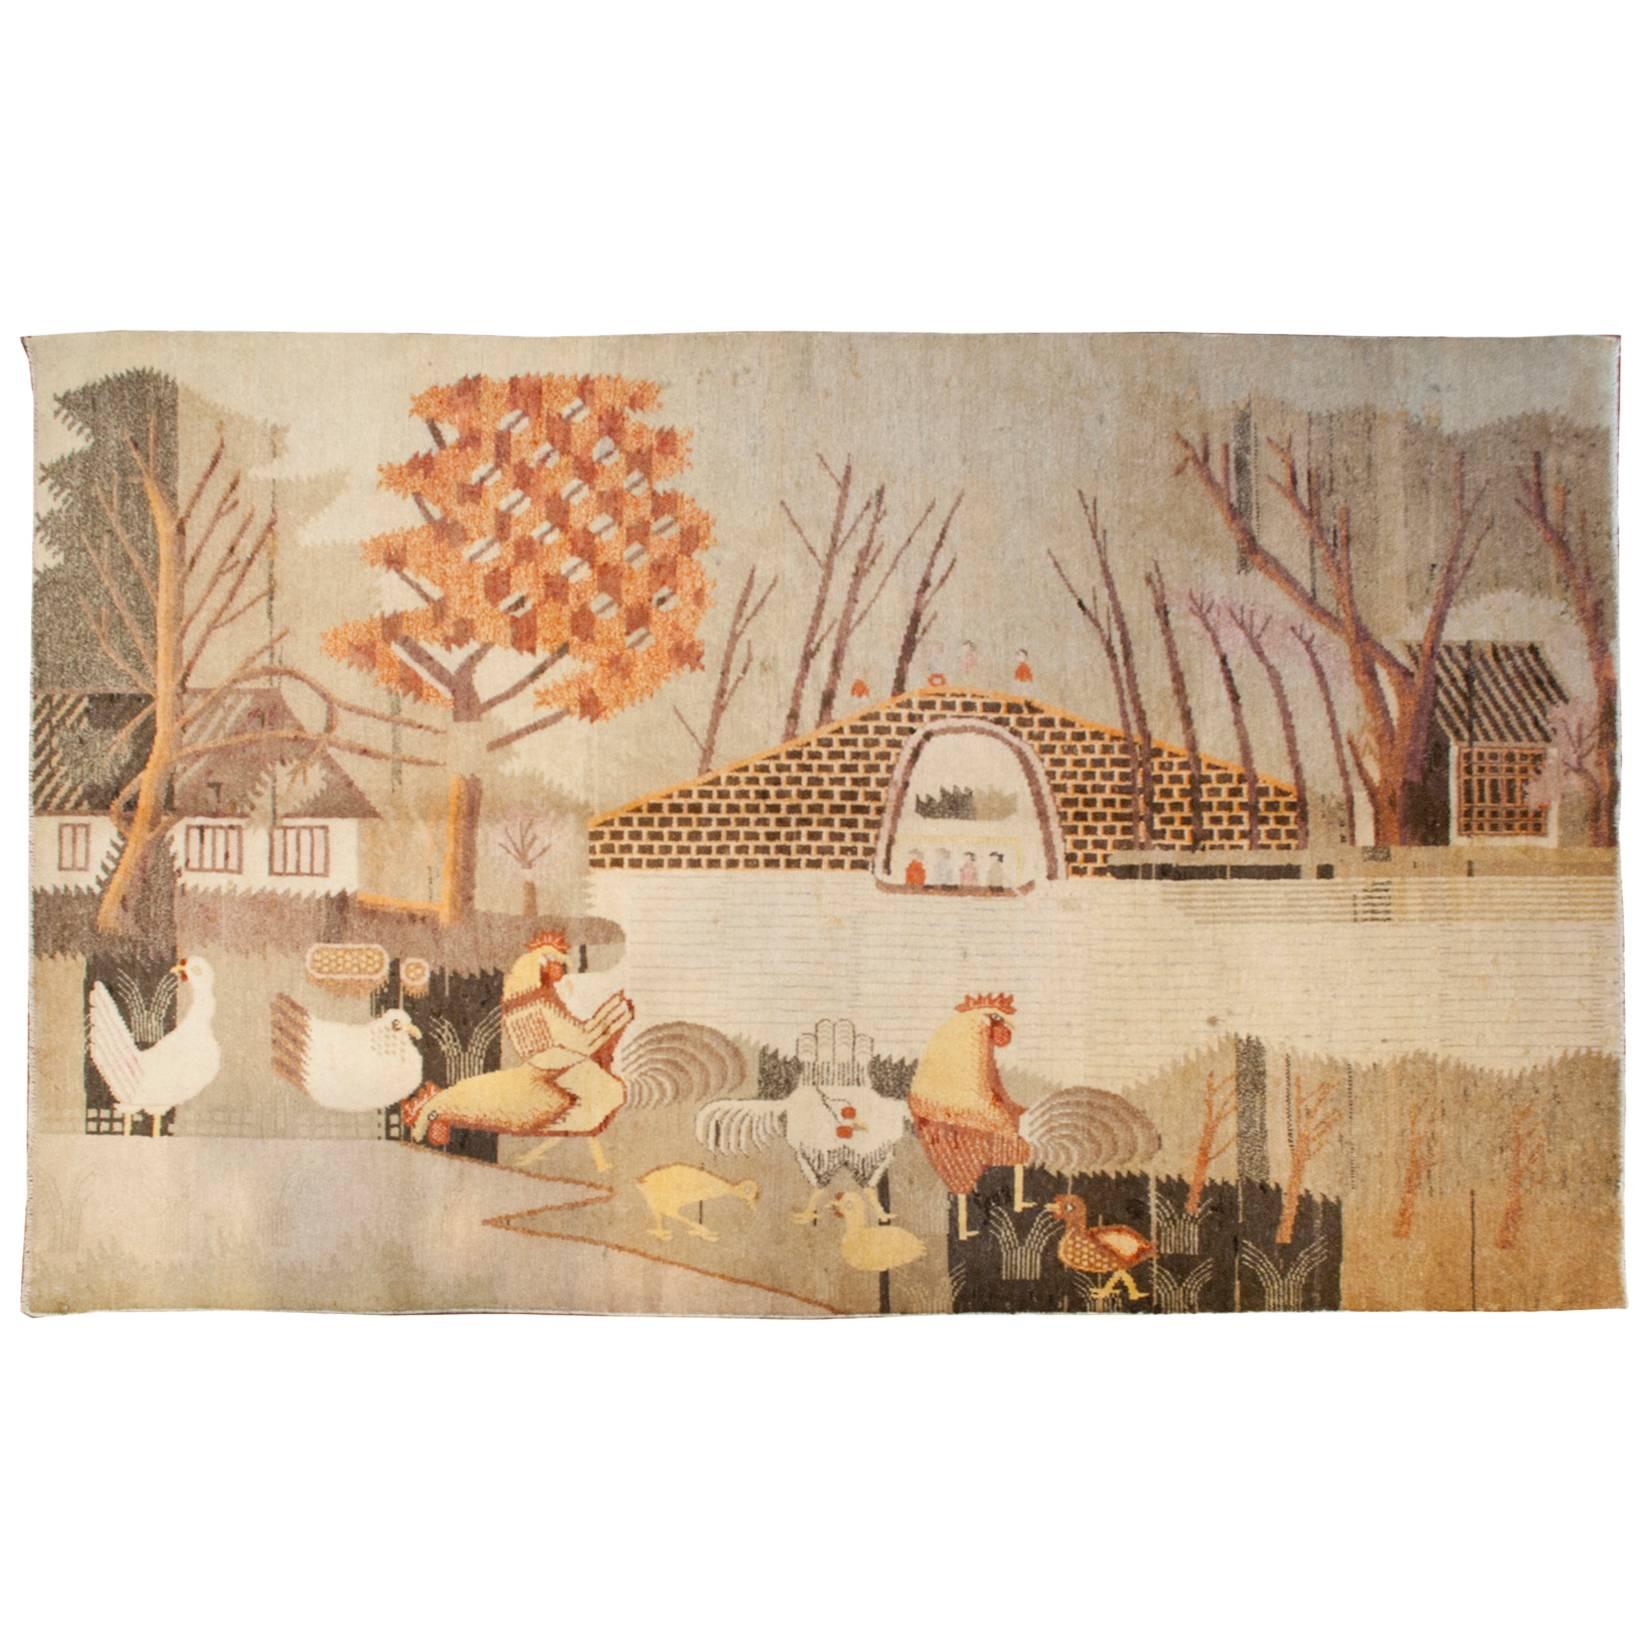 Bildender Khotan-Teppich aus der Mitte des 20. Jahrhunderts